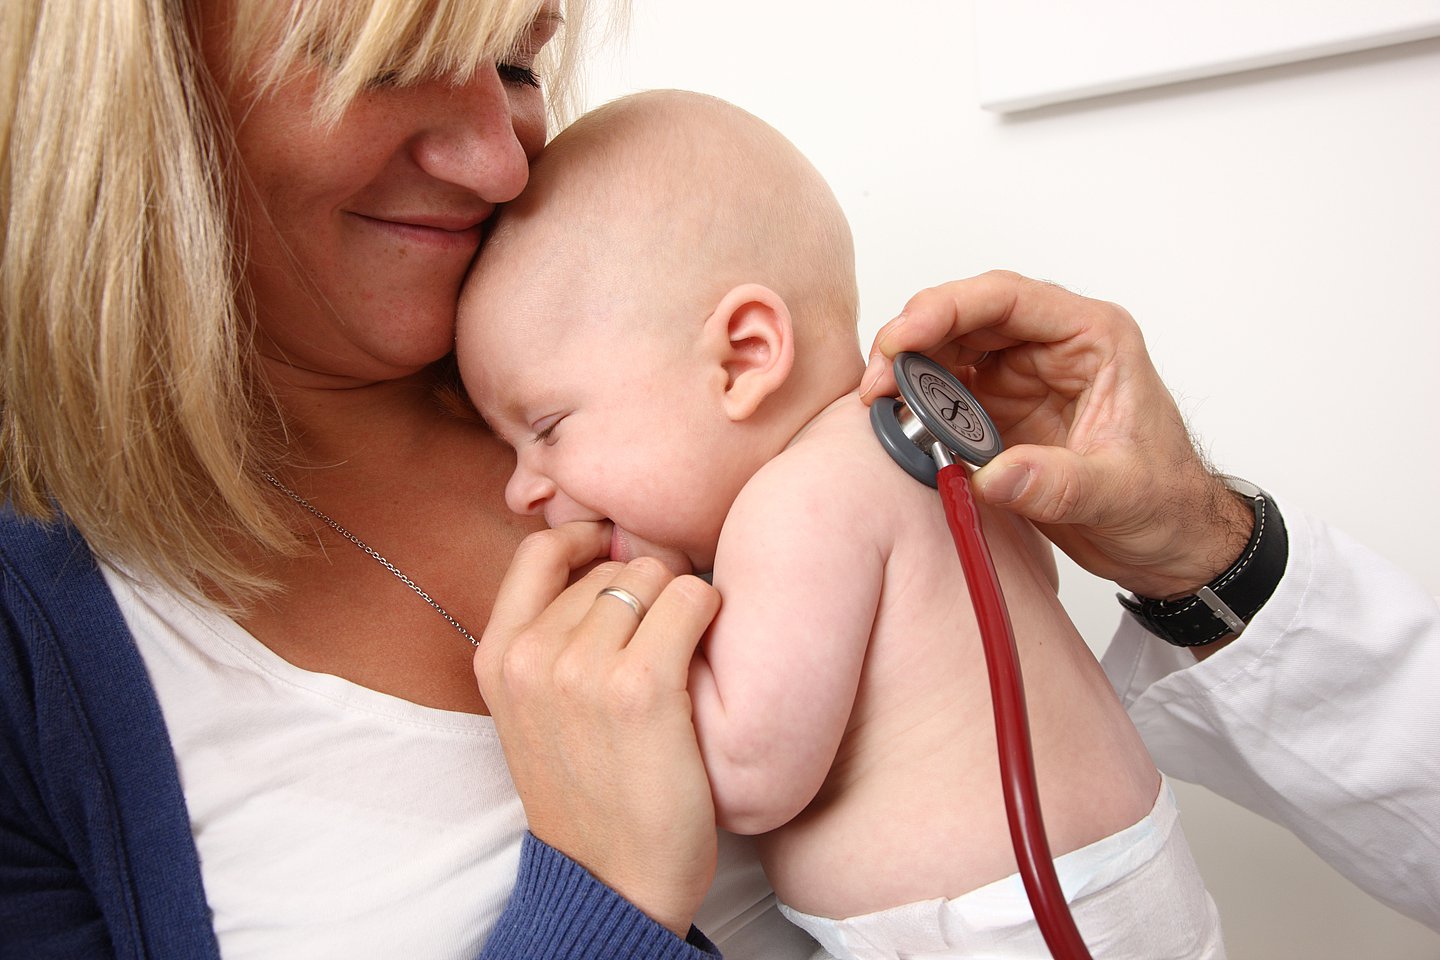 Foto: Eine Mutter hält ihr Baby in ihrem Arm. Eine medizinische Fachperson hört ein Baby mit einem Stethoskop ab. 